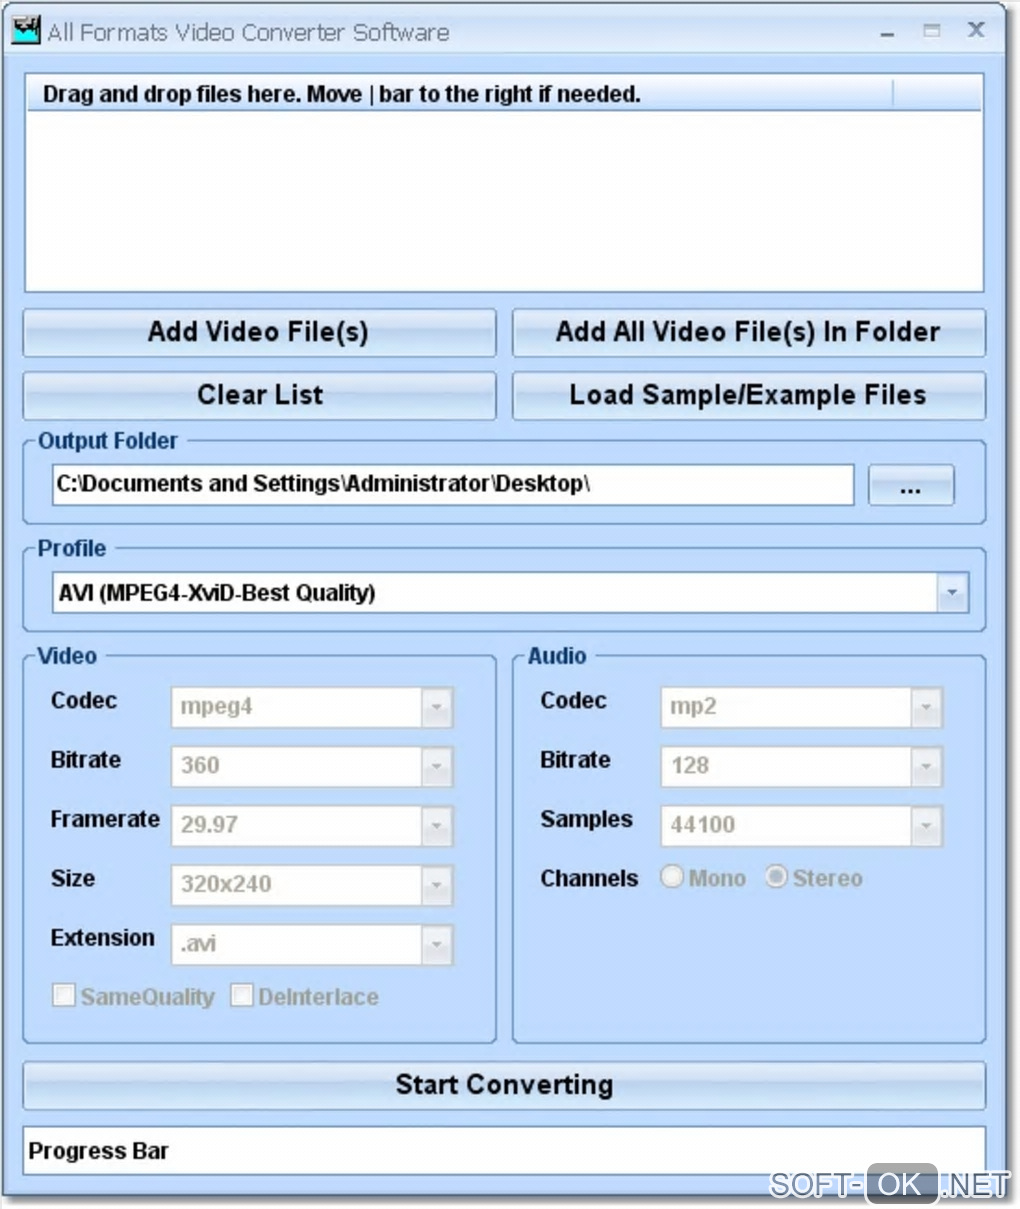 Screenshot №1 "All Formats Video Converter Software"